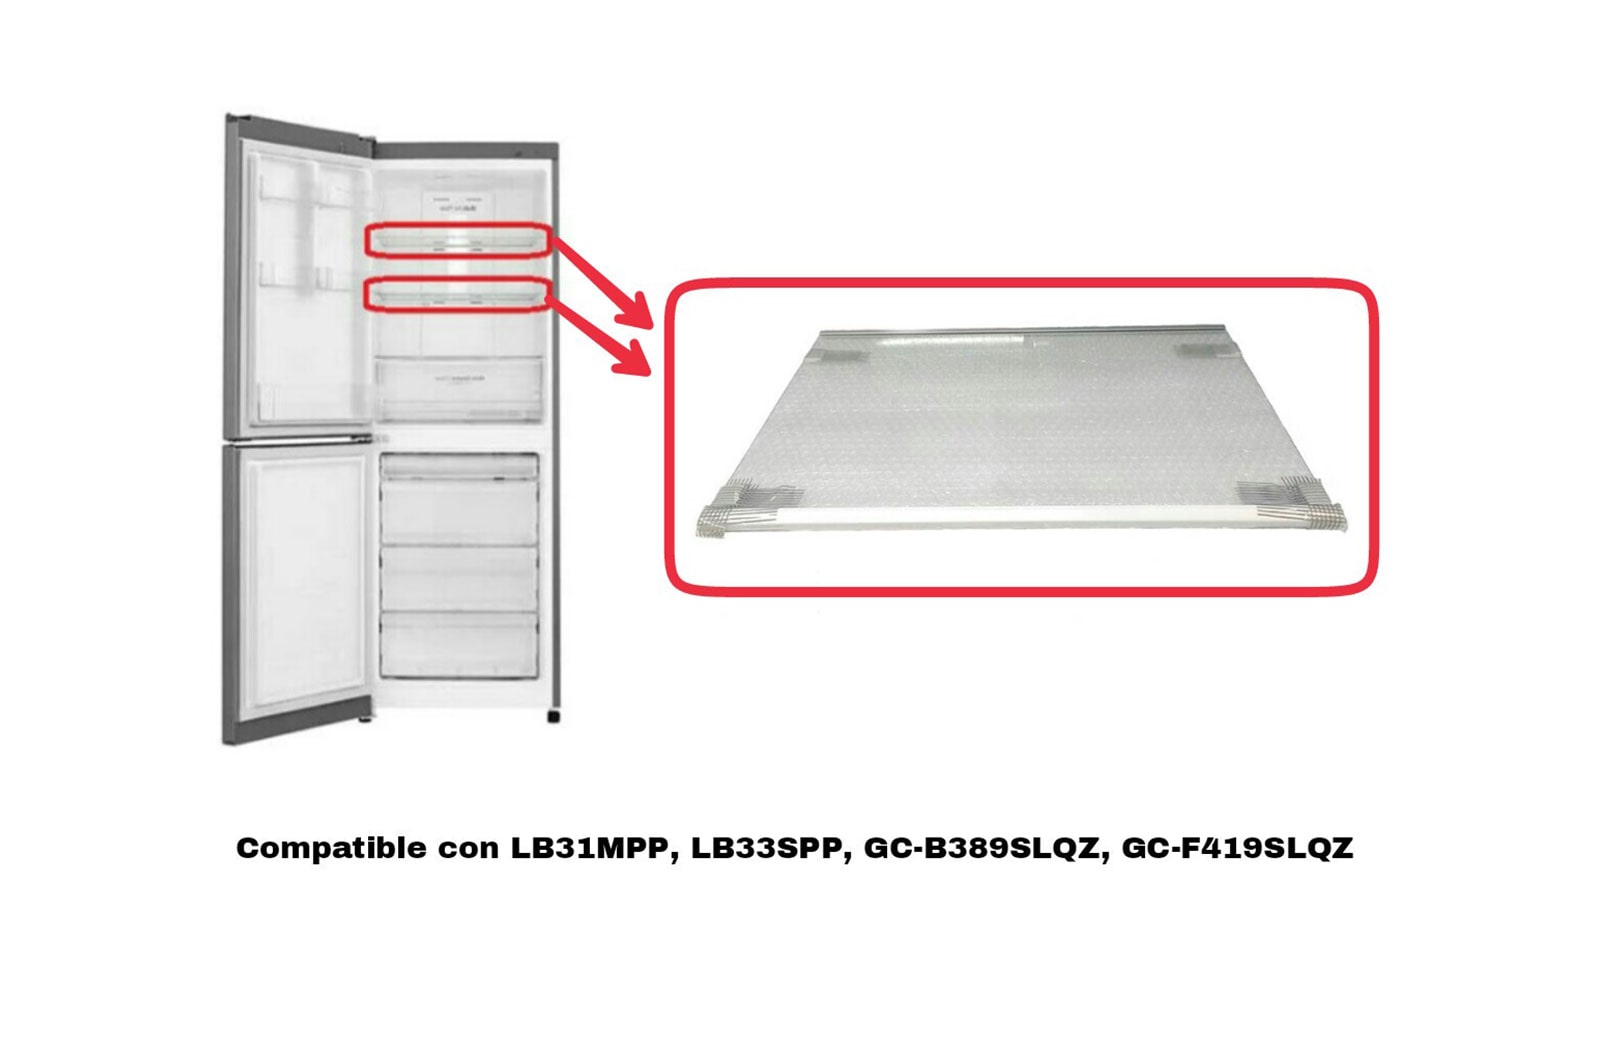 LG Bandeja refrigerador, AHT73754305